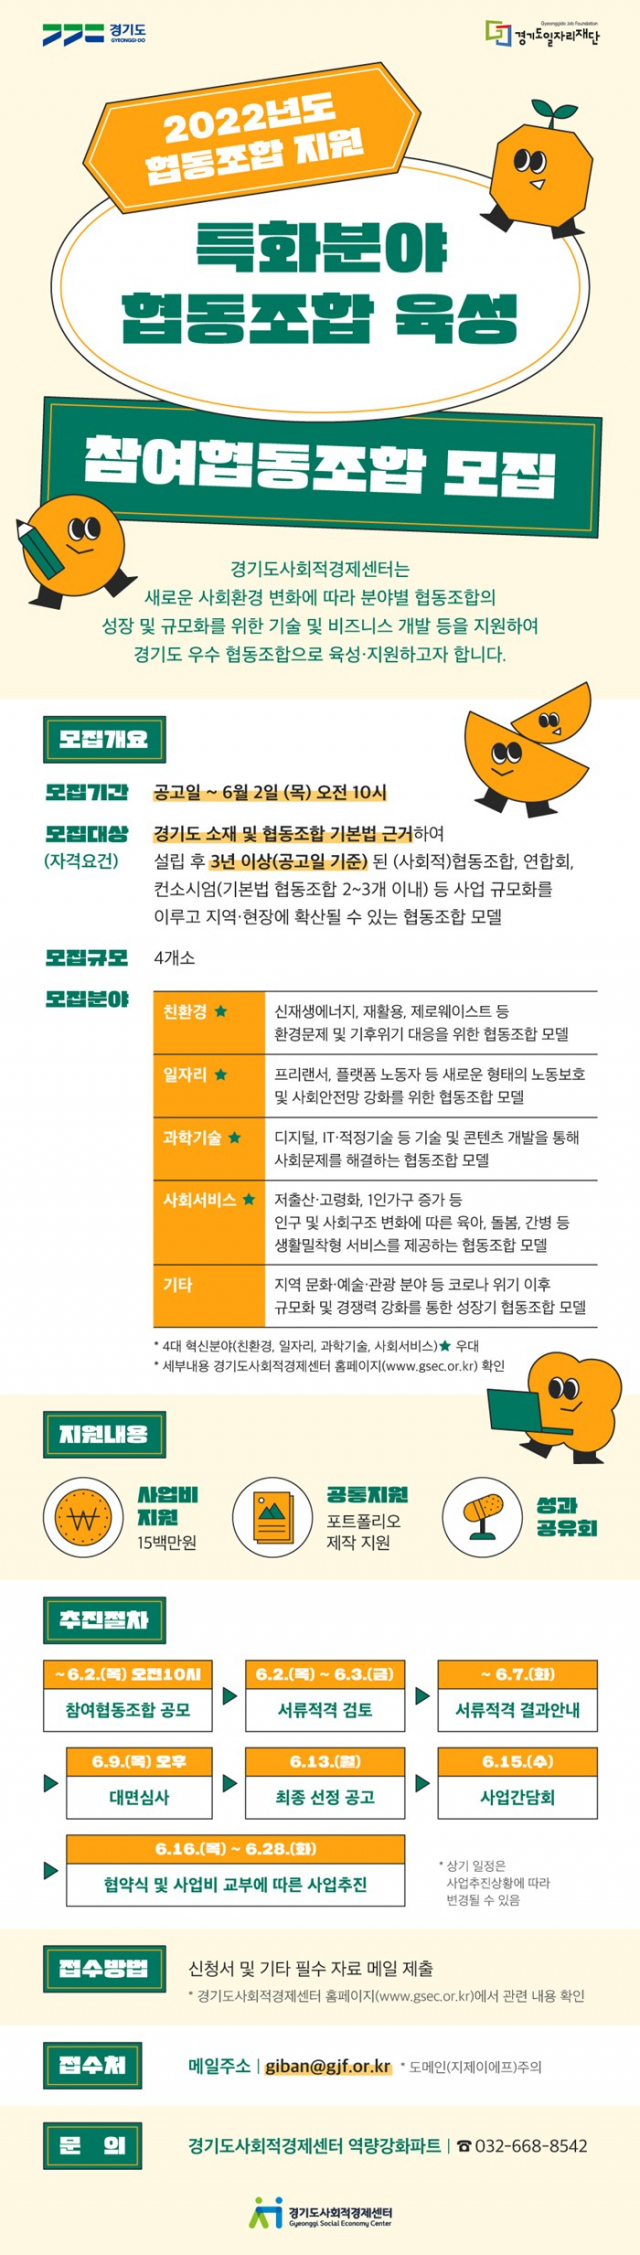 경기도사회적경제센터, 협동조합 사업화 지원 4개사 모집…최대 1,500만원